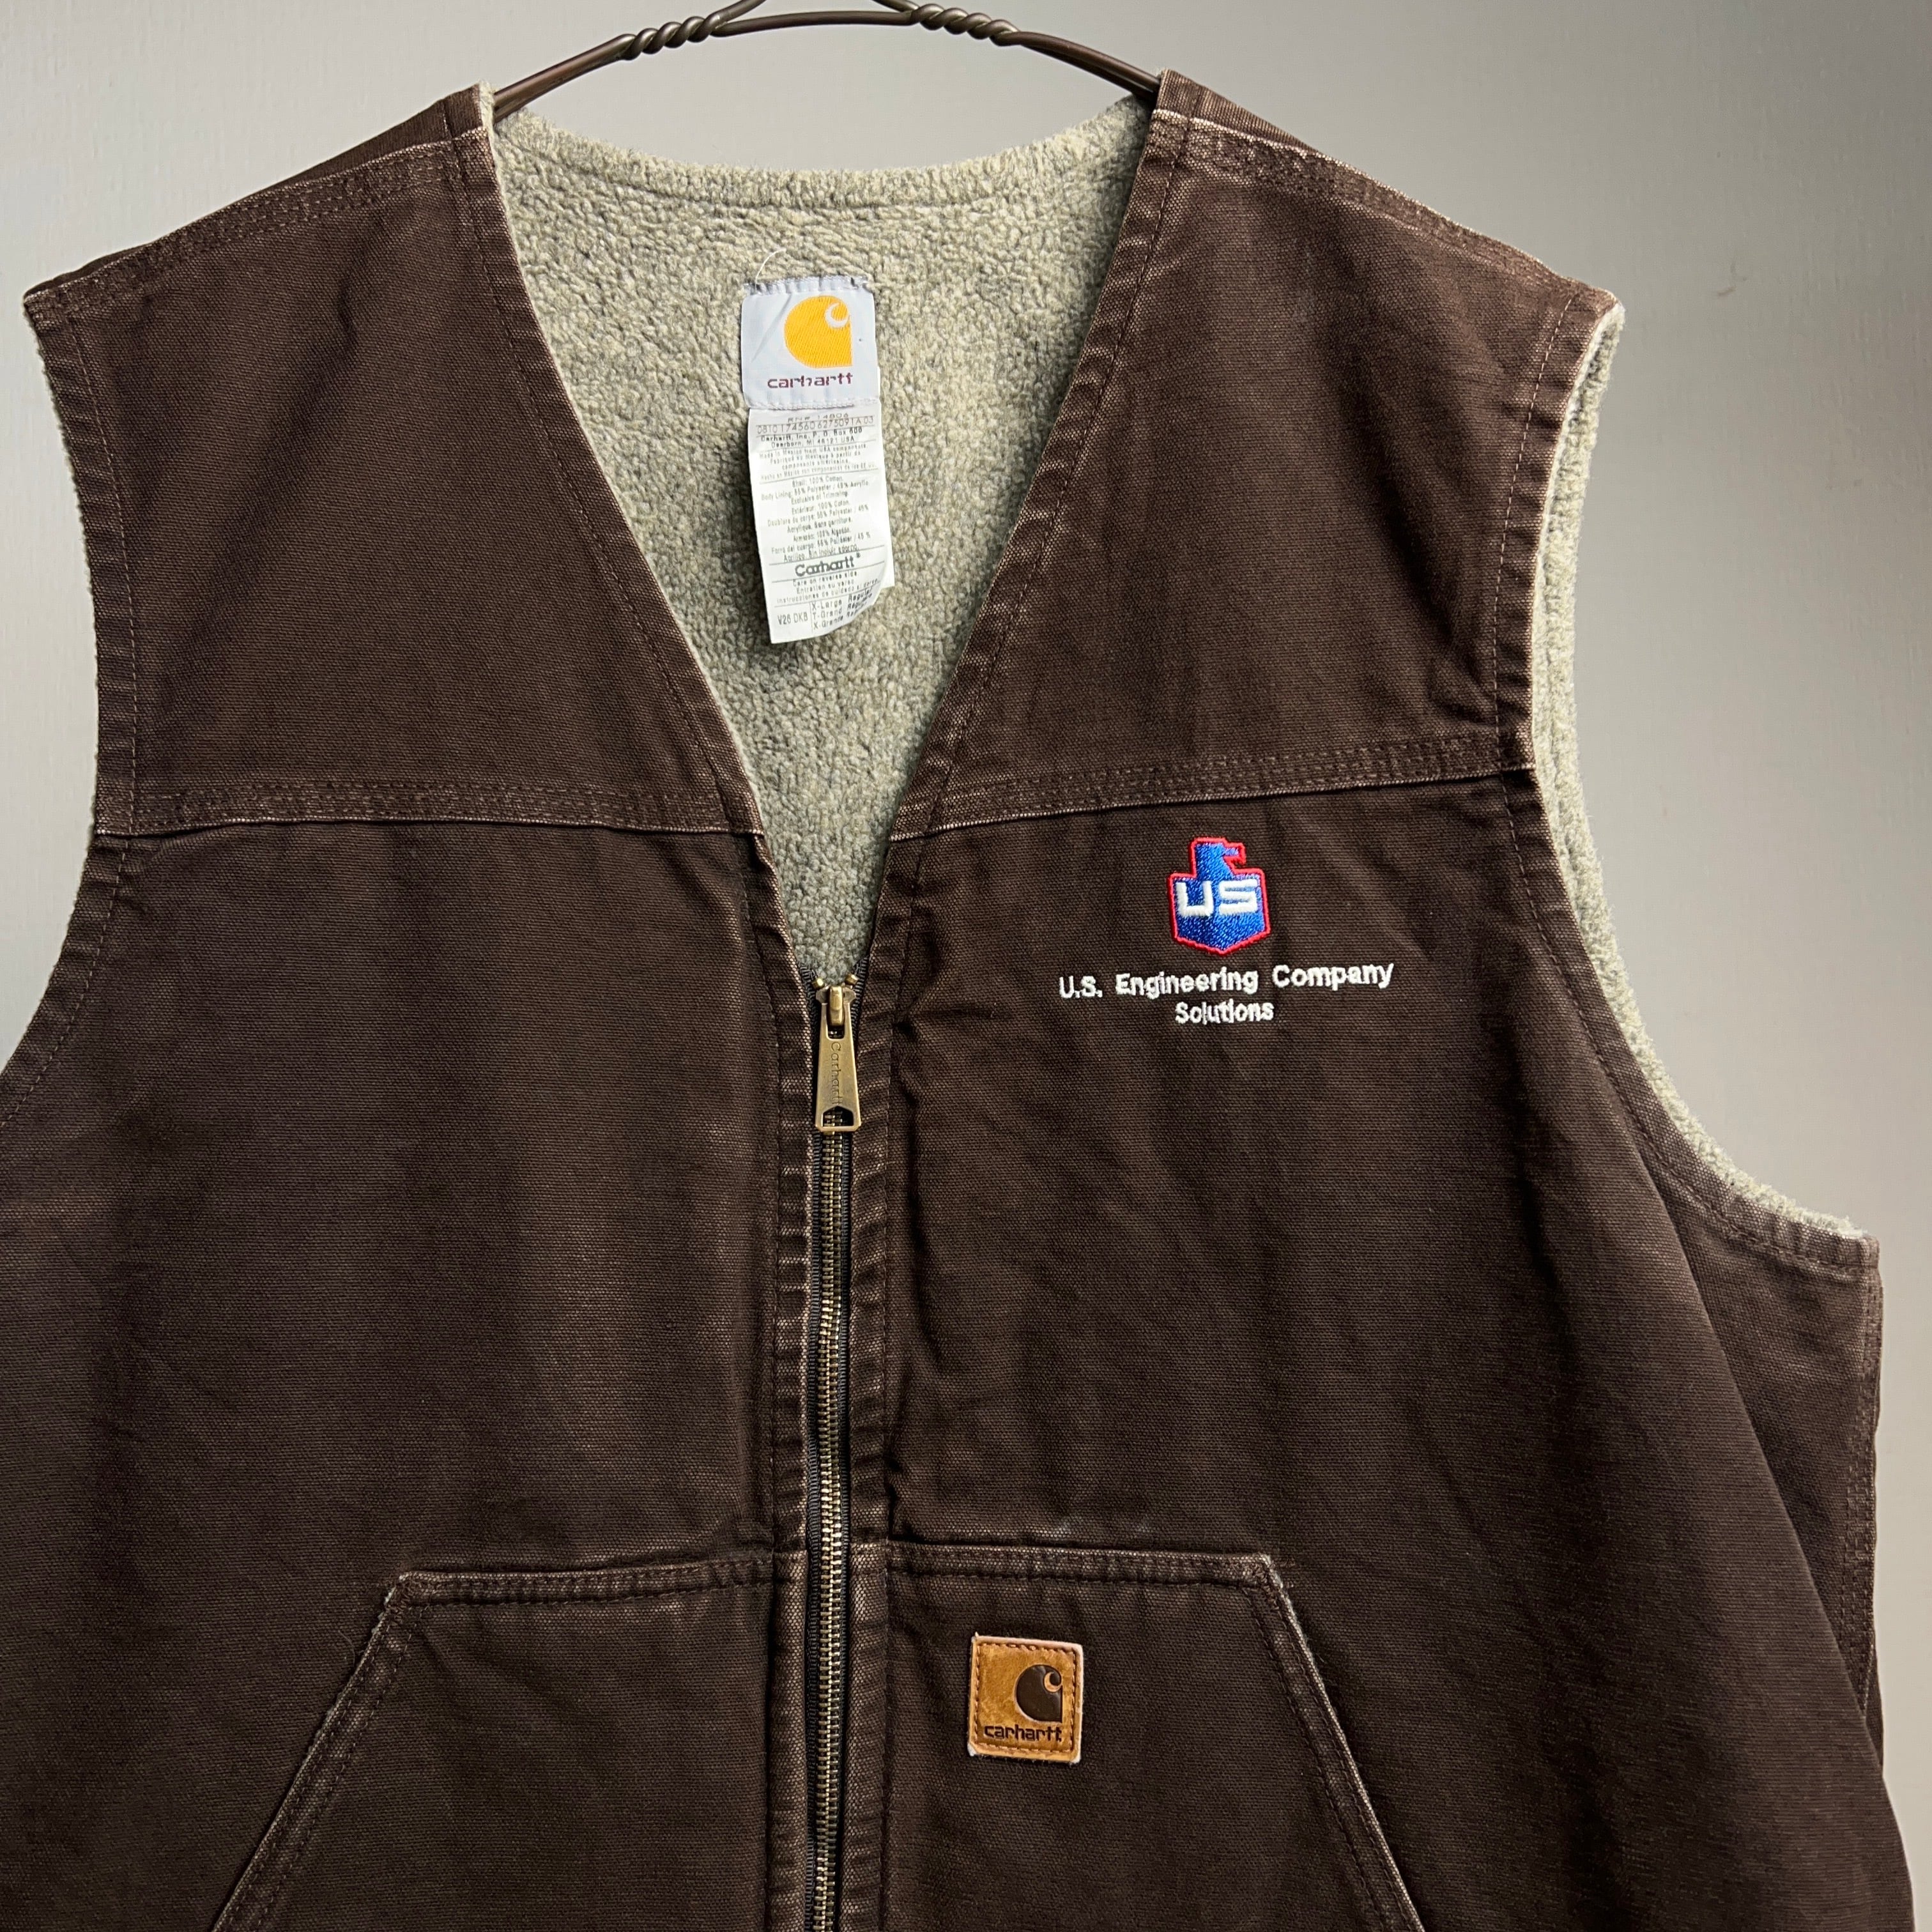 00's “Carhartt” Duck Vest SIZE XL 00年代 カーハート ダックベスト 刺繍 ブラウン【0929A115】【送料無料】